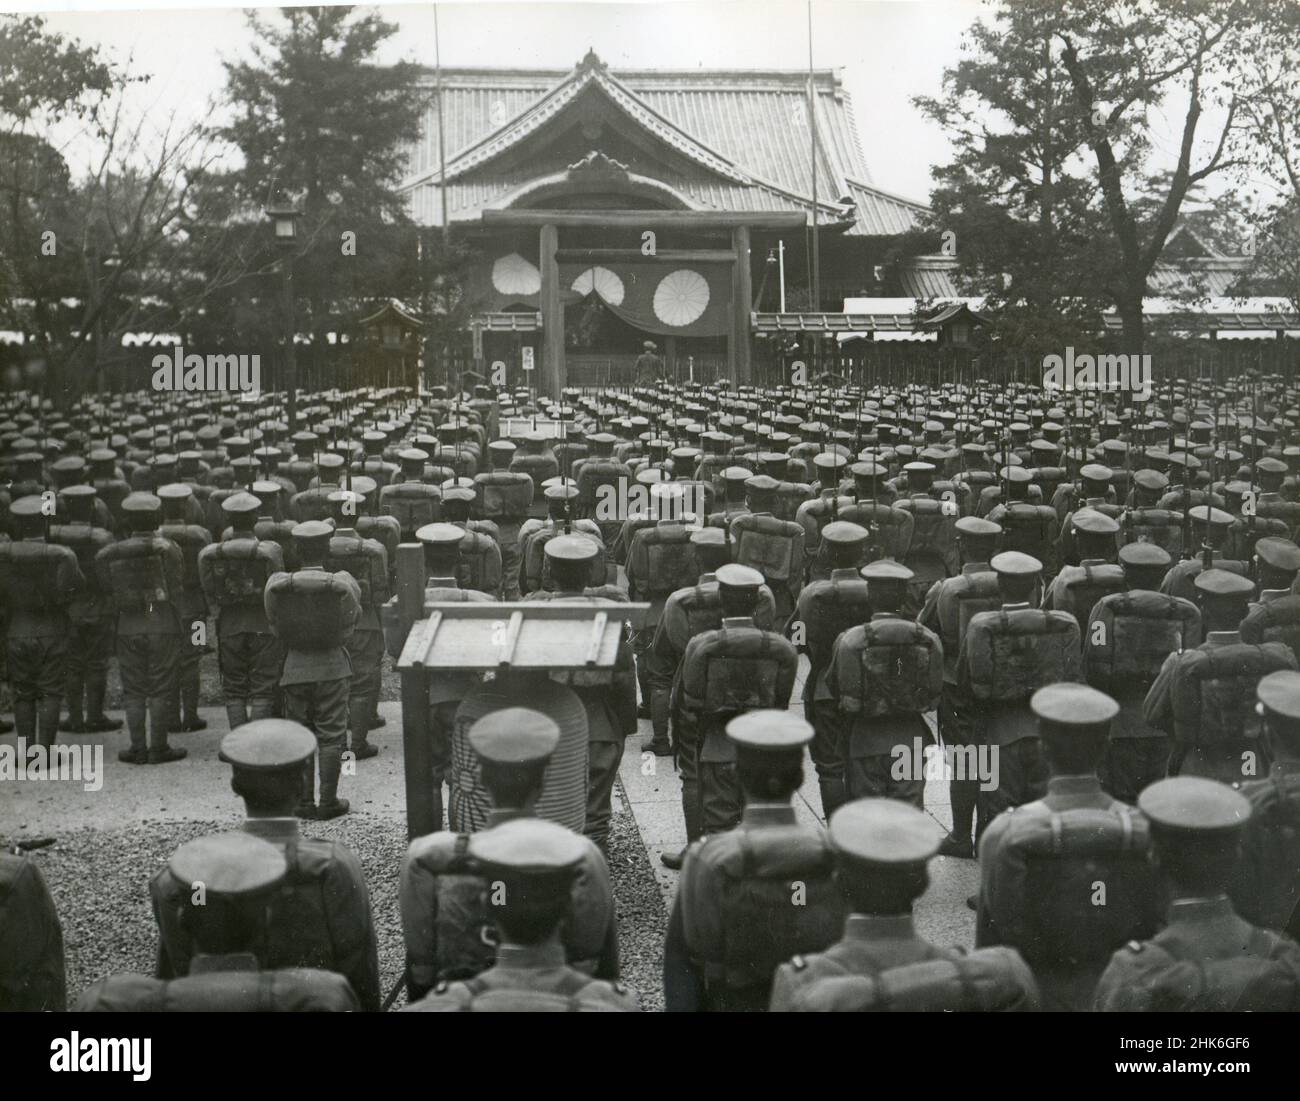 10-18-38 - Tokyo - 10 344 héros enchâssés - le 2nd jour du grand festival spécial du sanctuaire Yakusuni pour consacrer 10 344 héros qui sont tombés dans l'incident de la Chine, aujourd'hui, le ministre de la guerre, le ministre de la Marine et d'autres hauts fonctionnaires ont payé le culte au sanctuaire.Spectacles de photos : des soldats de l'armée japonaise se sont rassemblés devant le sanctuaire pour honorer les camarades décédés. Banque D'Images